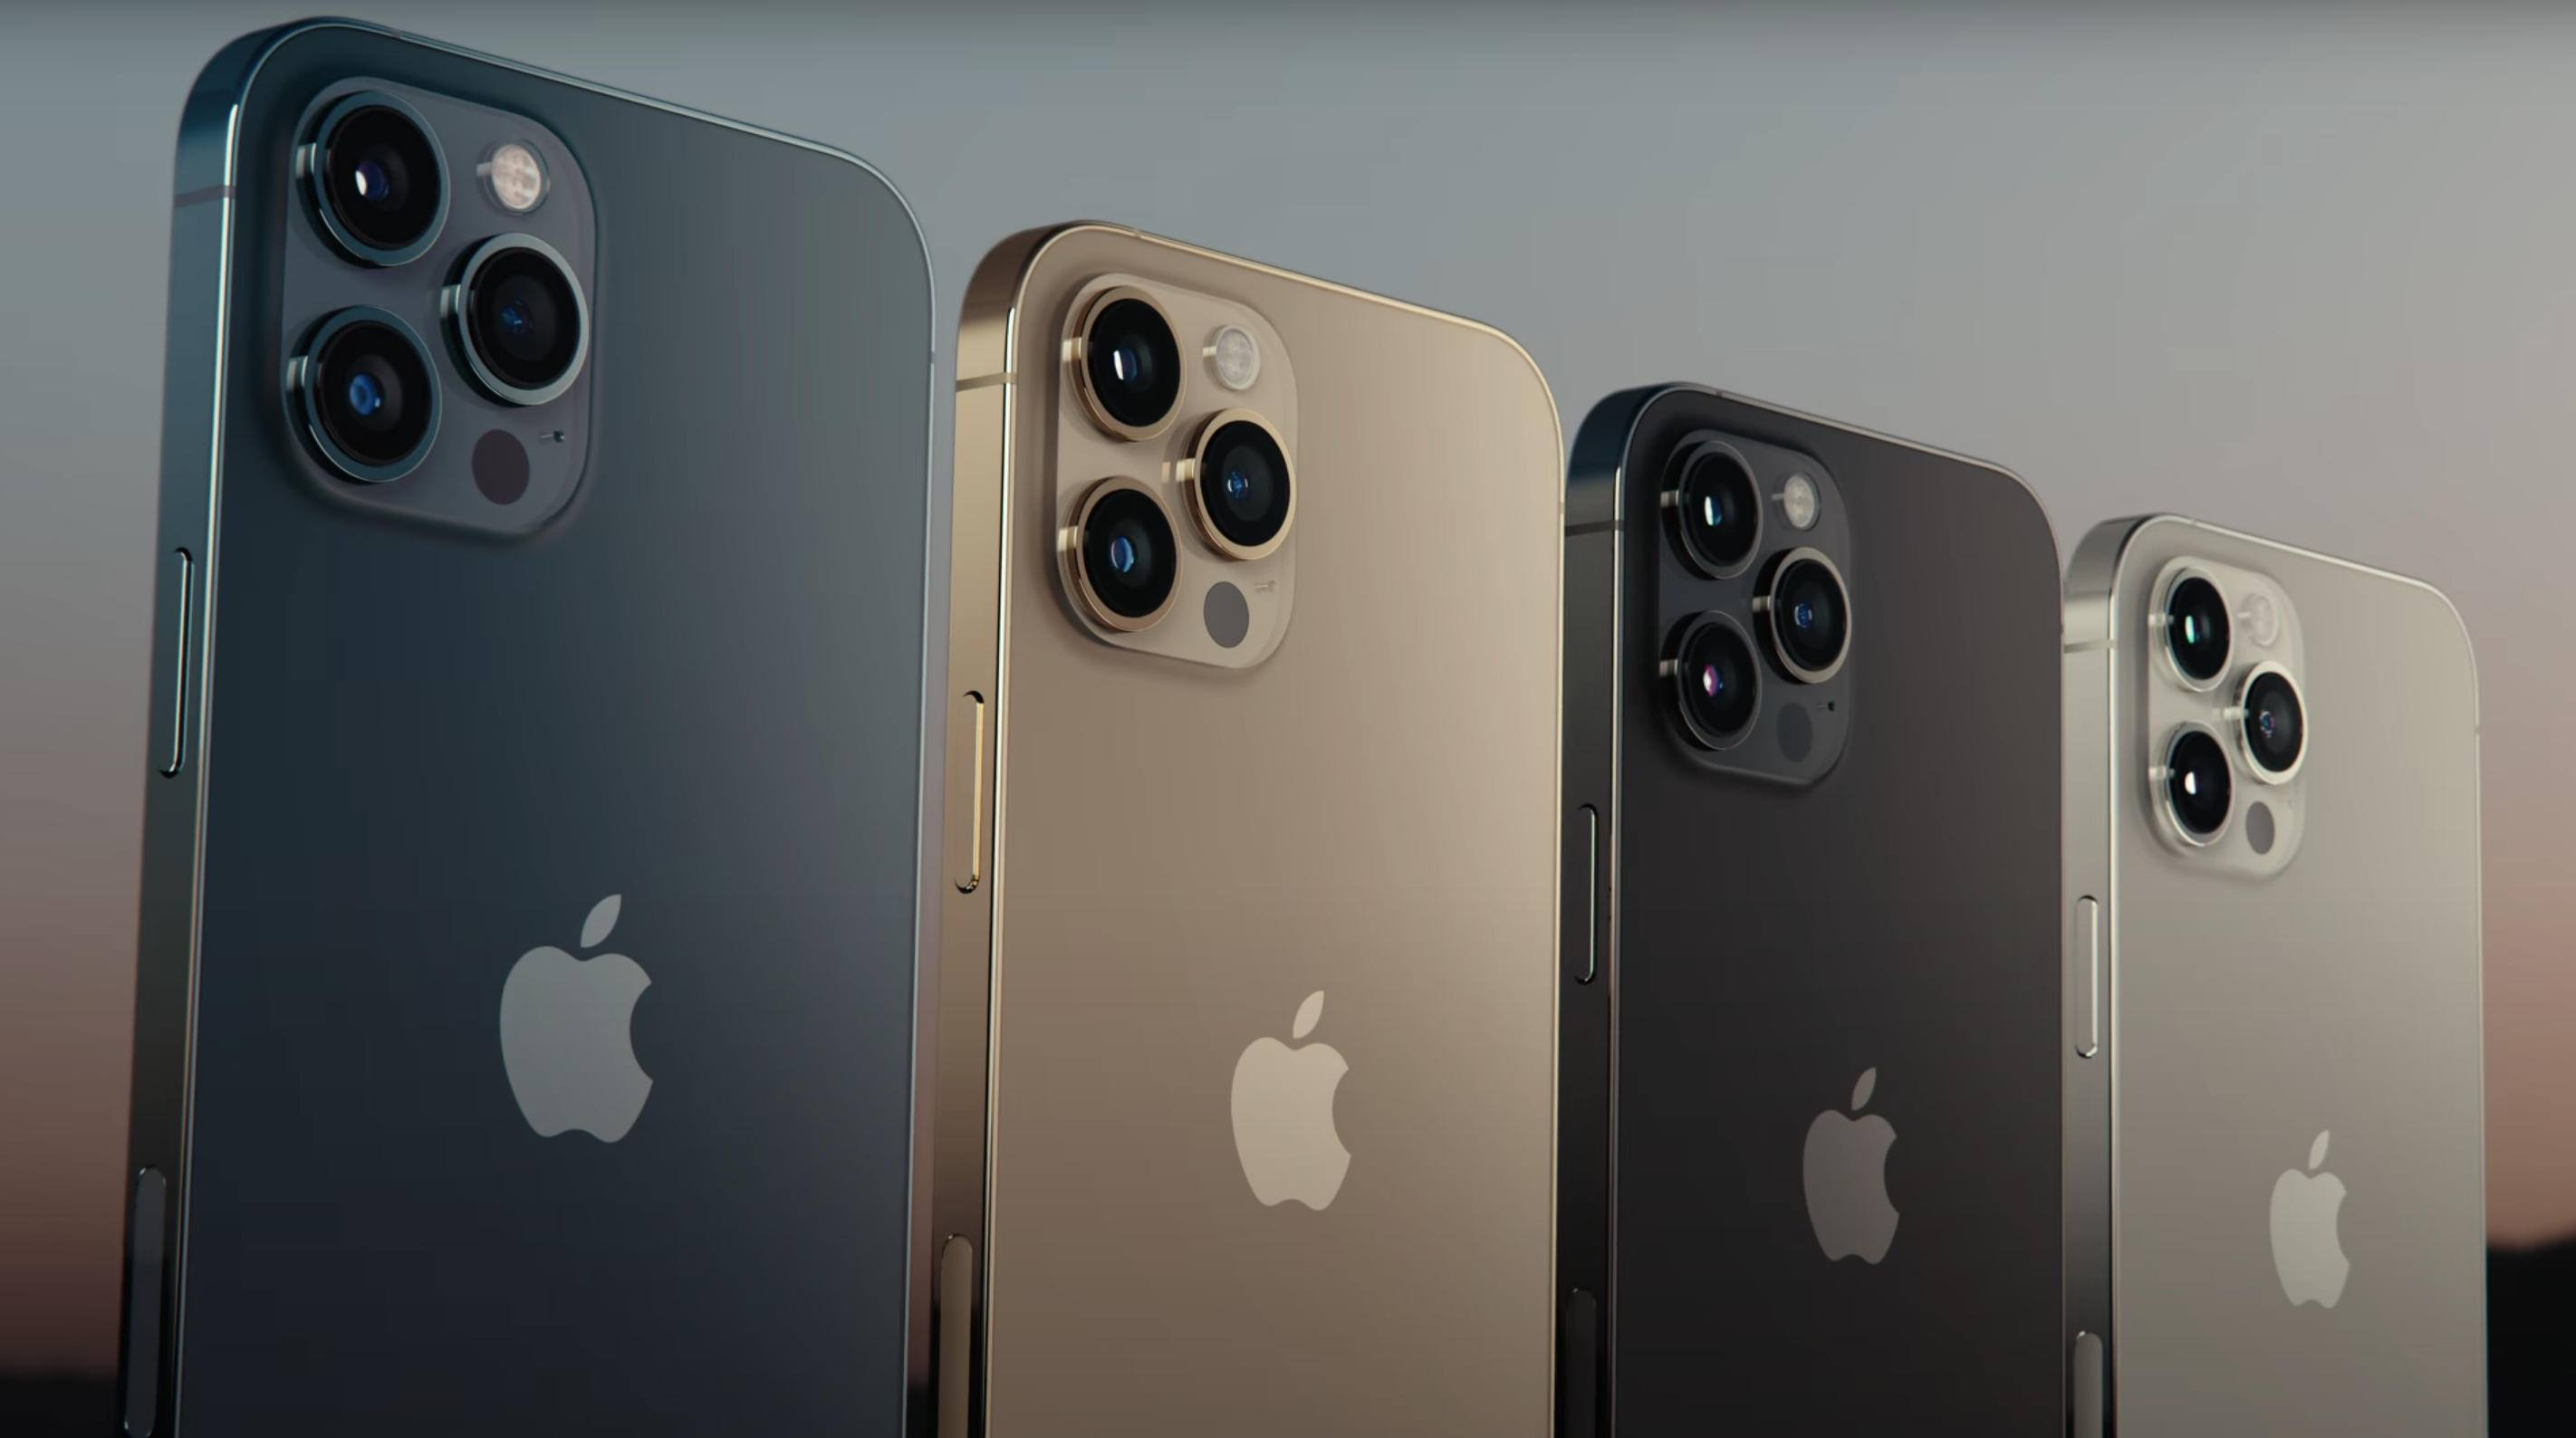 Смартфоны iPhone 12 Pro и iPhone 12 Pro Max стали дефицитом